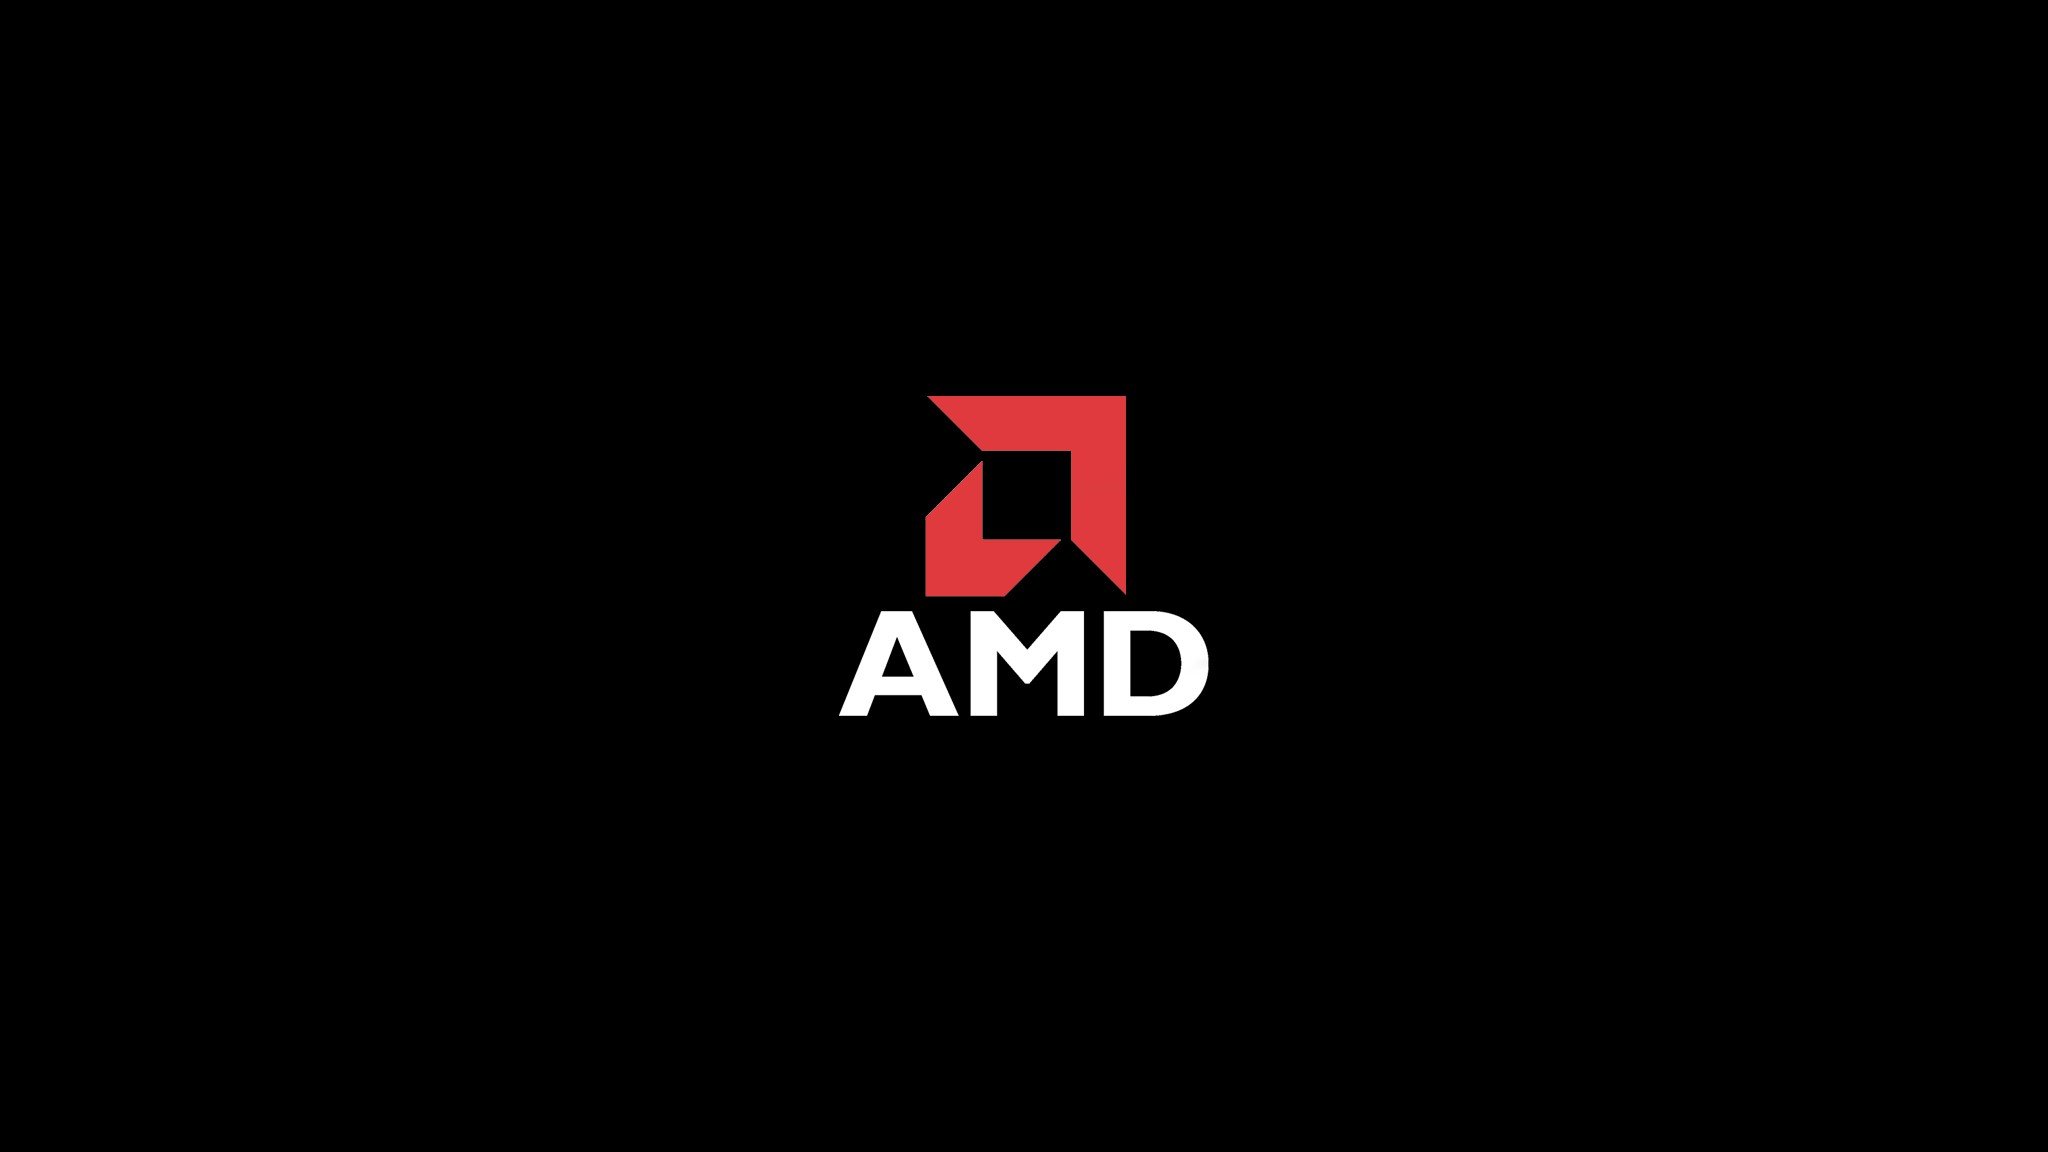 AMD Wallpaper